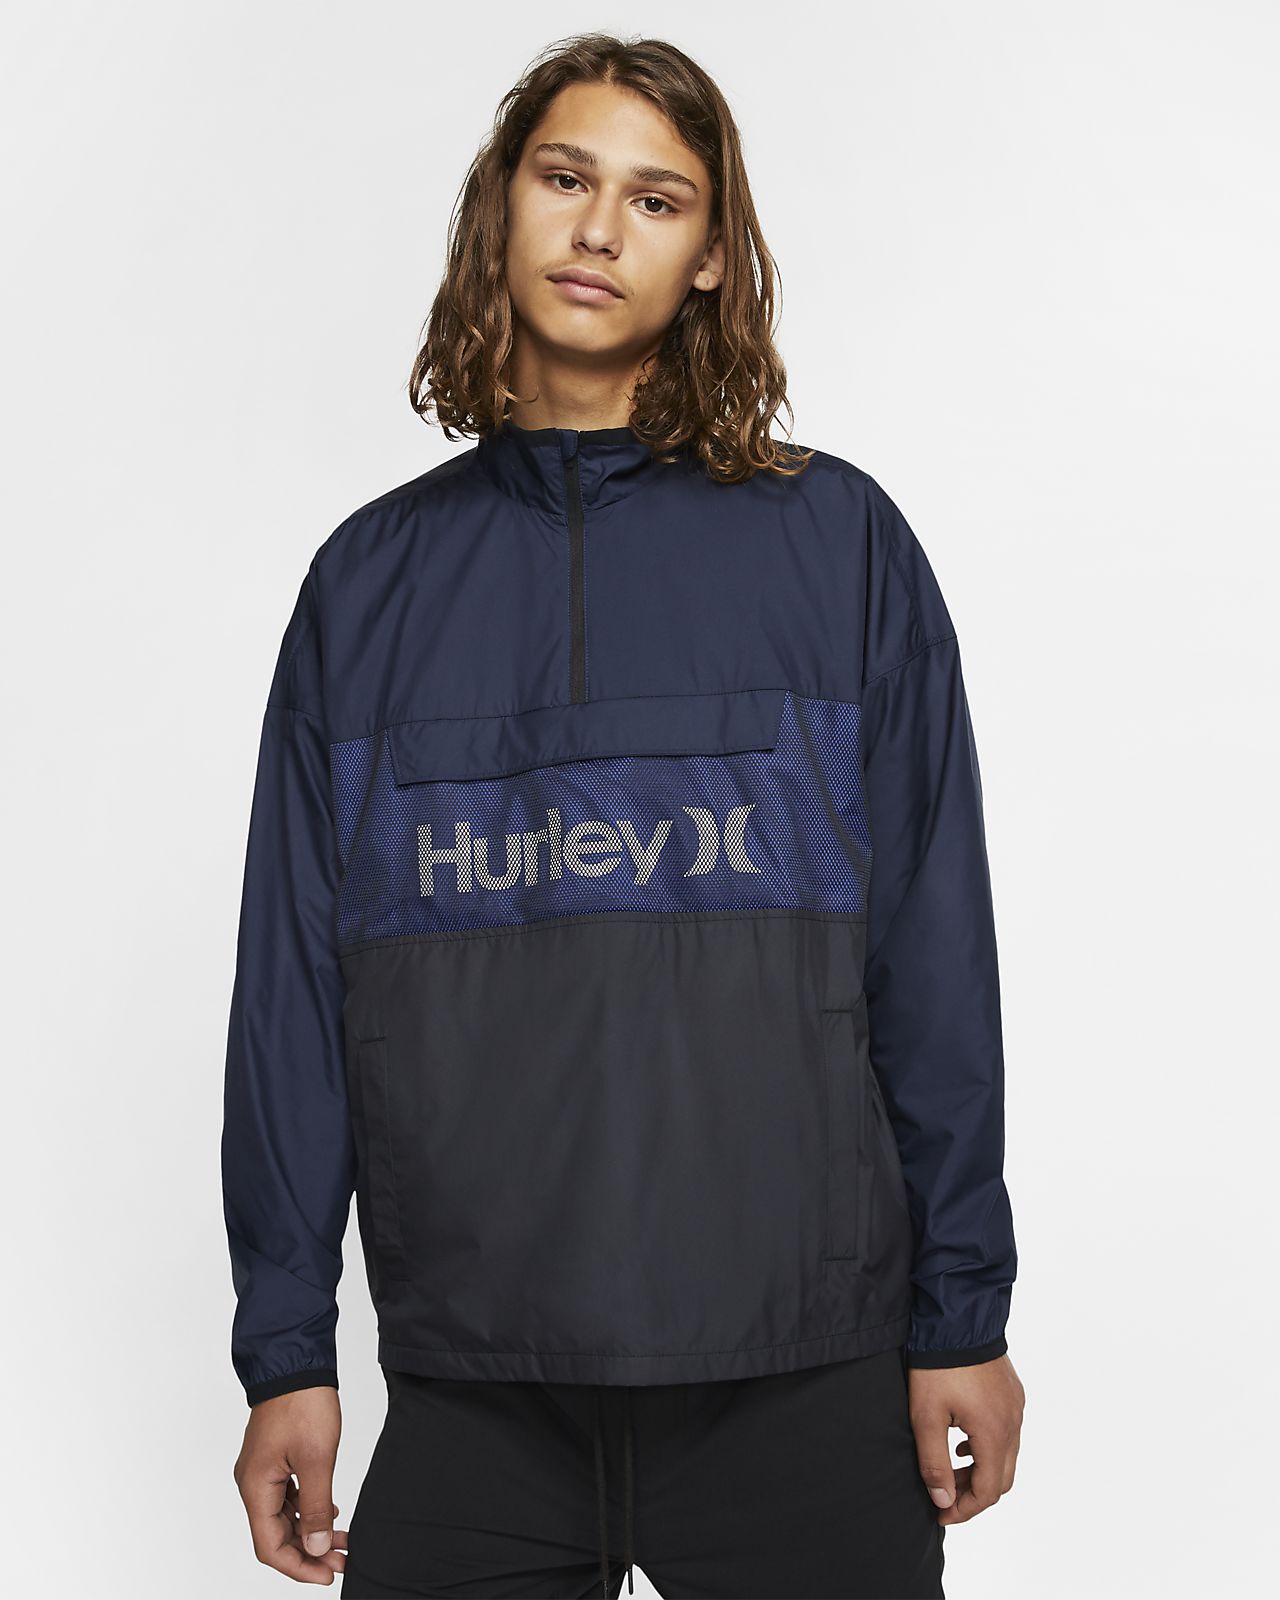 Hurley Mens Siege Windbreaker Jacket